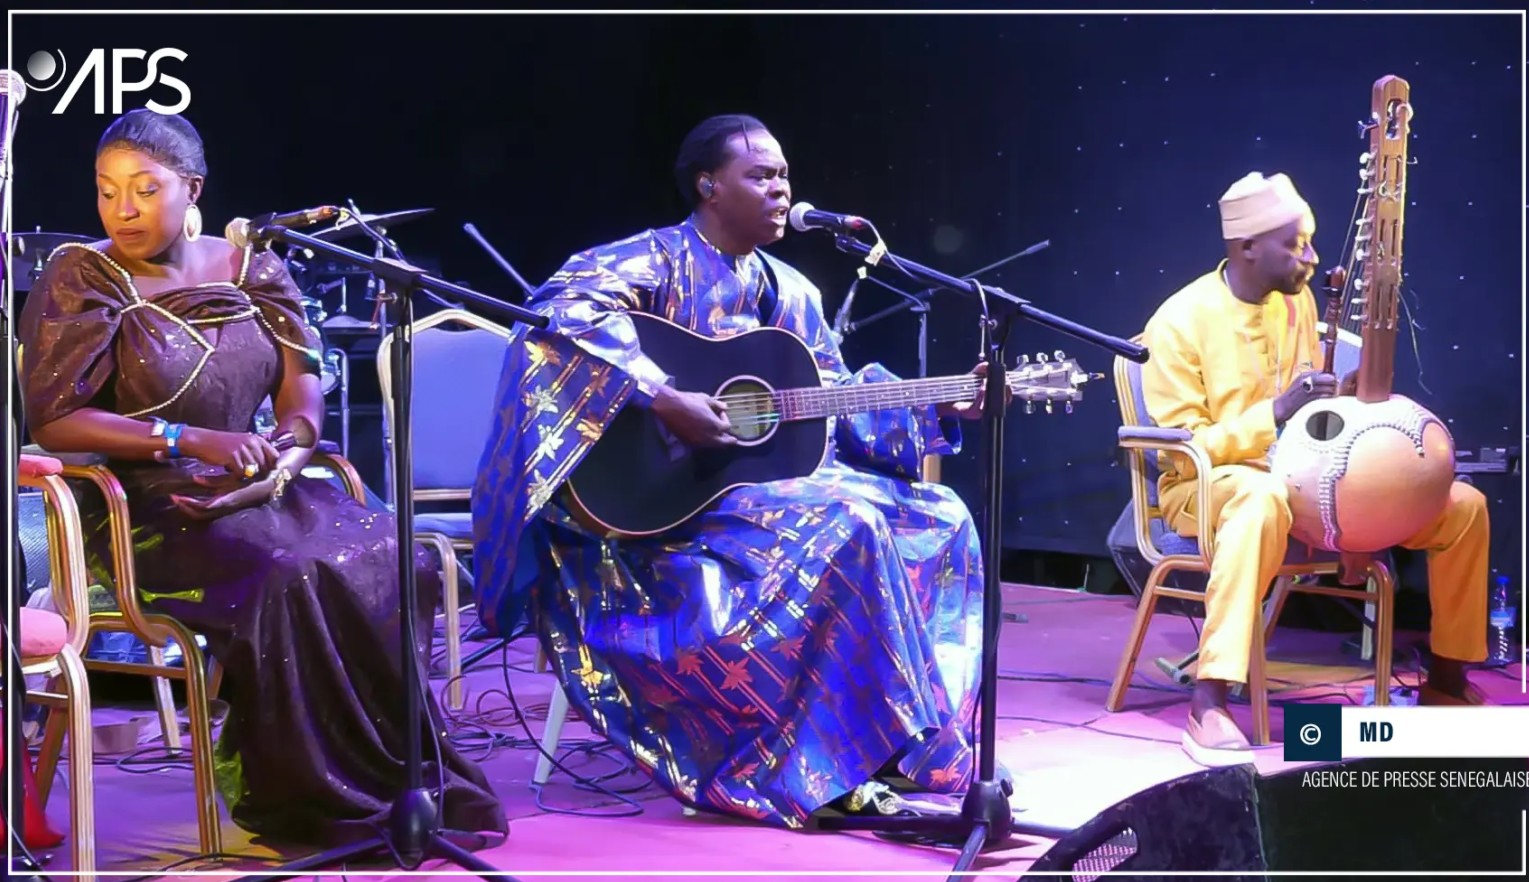 Mauritanie-Sénégal-musique : À Nouakchott, Baaba Maal fait le bonheur de ses fans mauritaniens